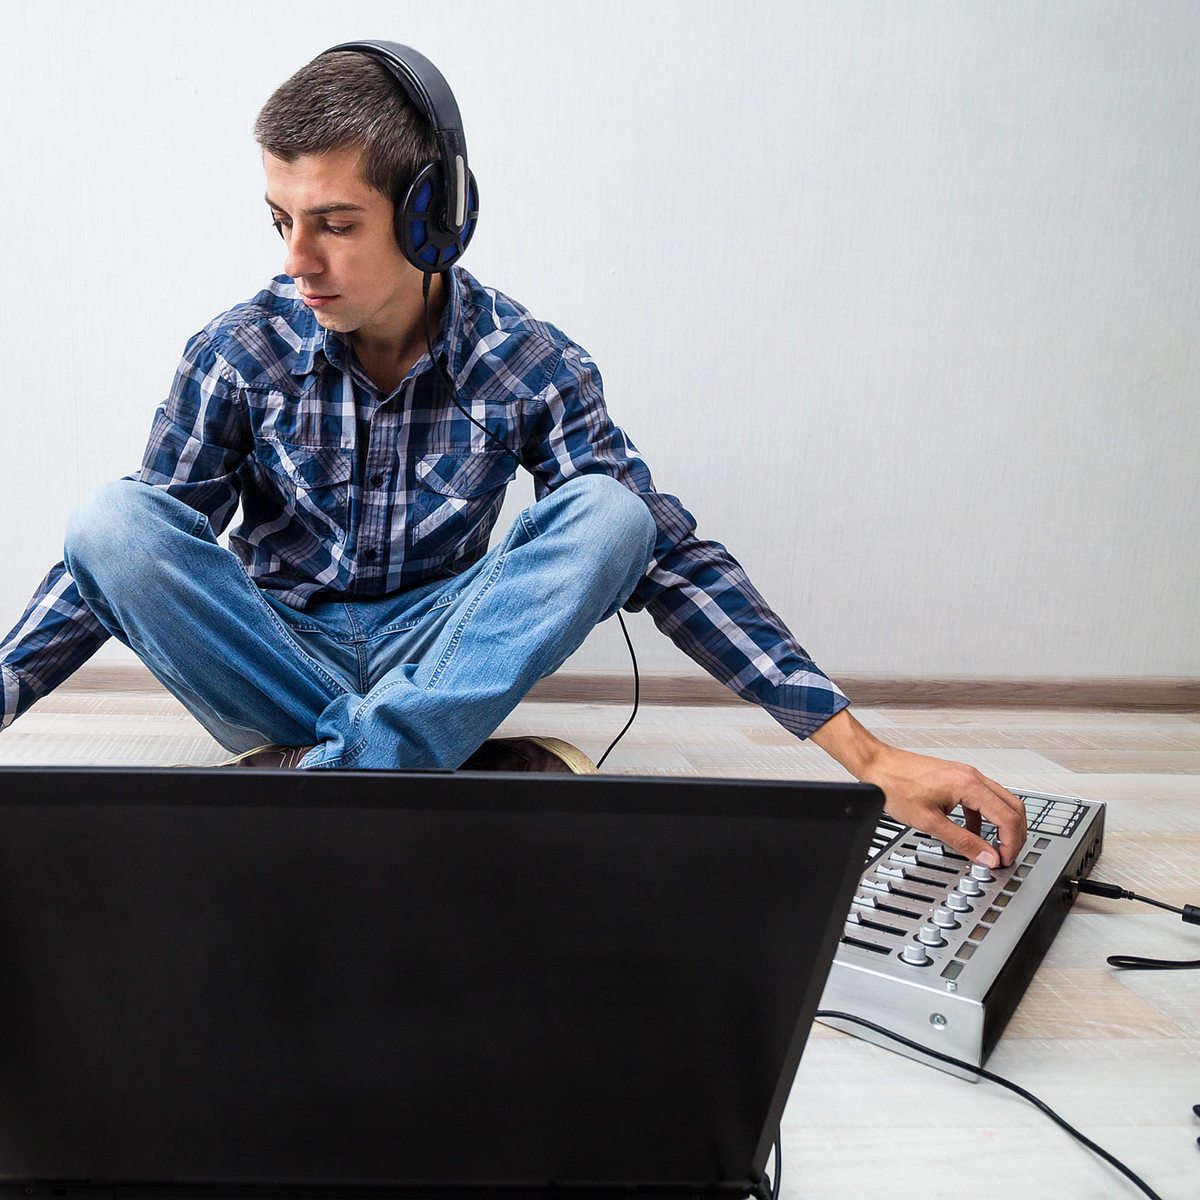 Coole Hobbys für Jungs – Die besten Ideen Musik